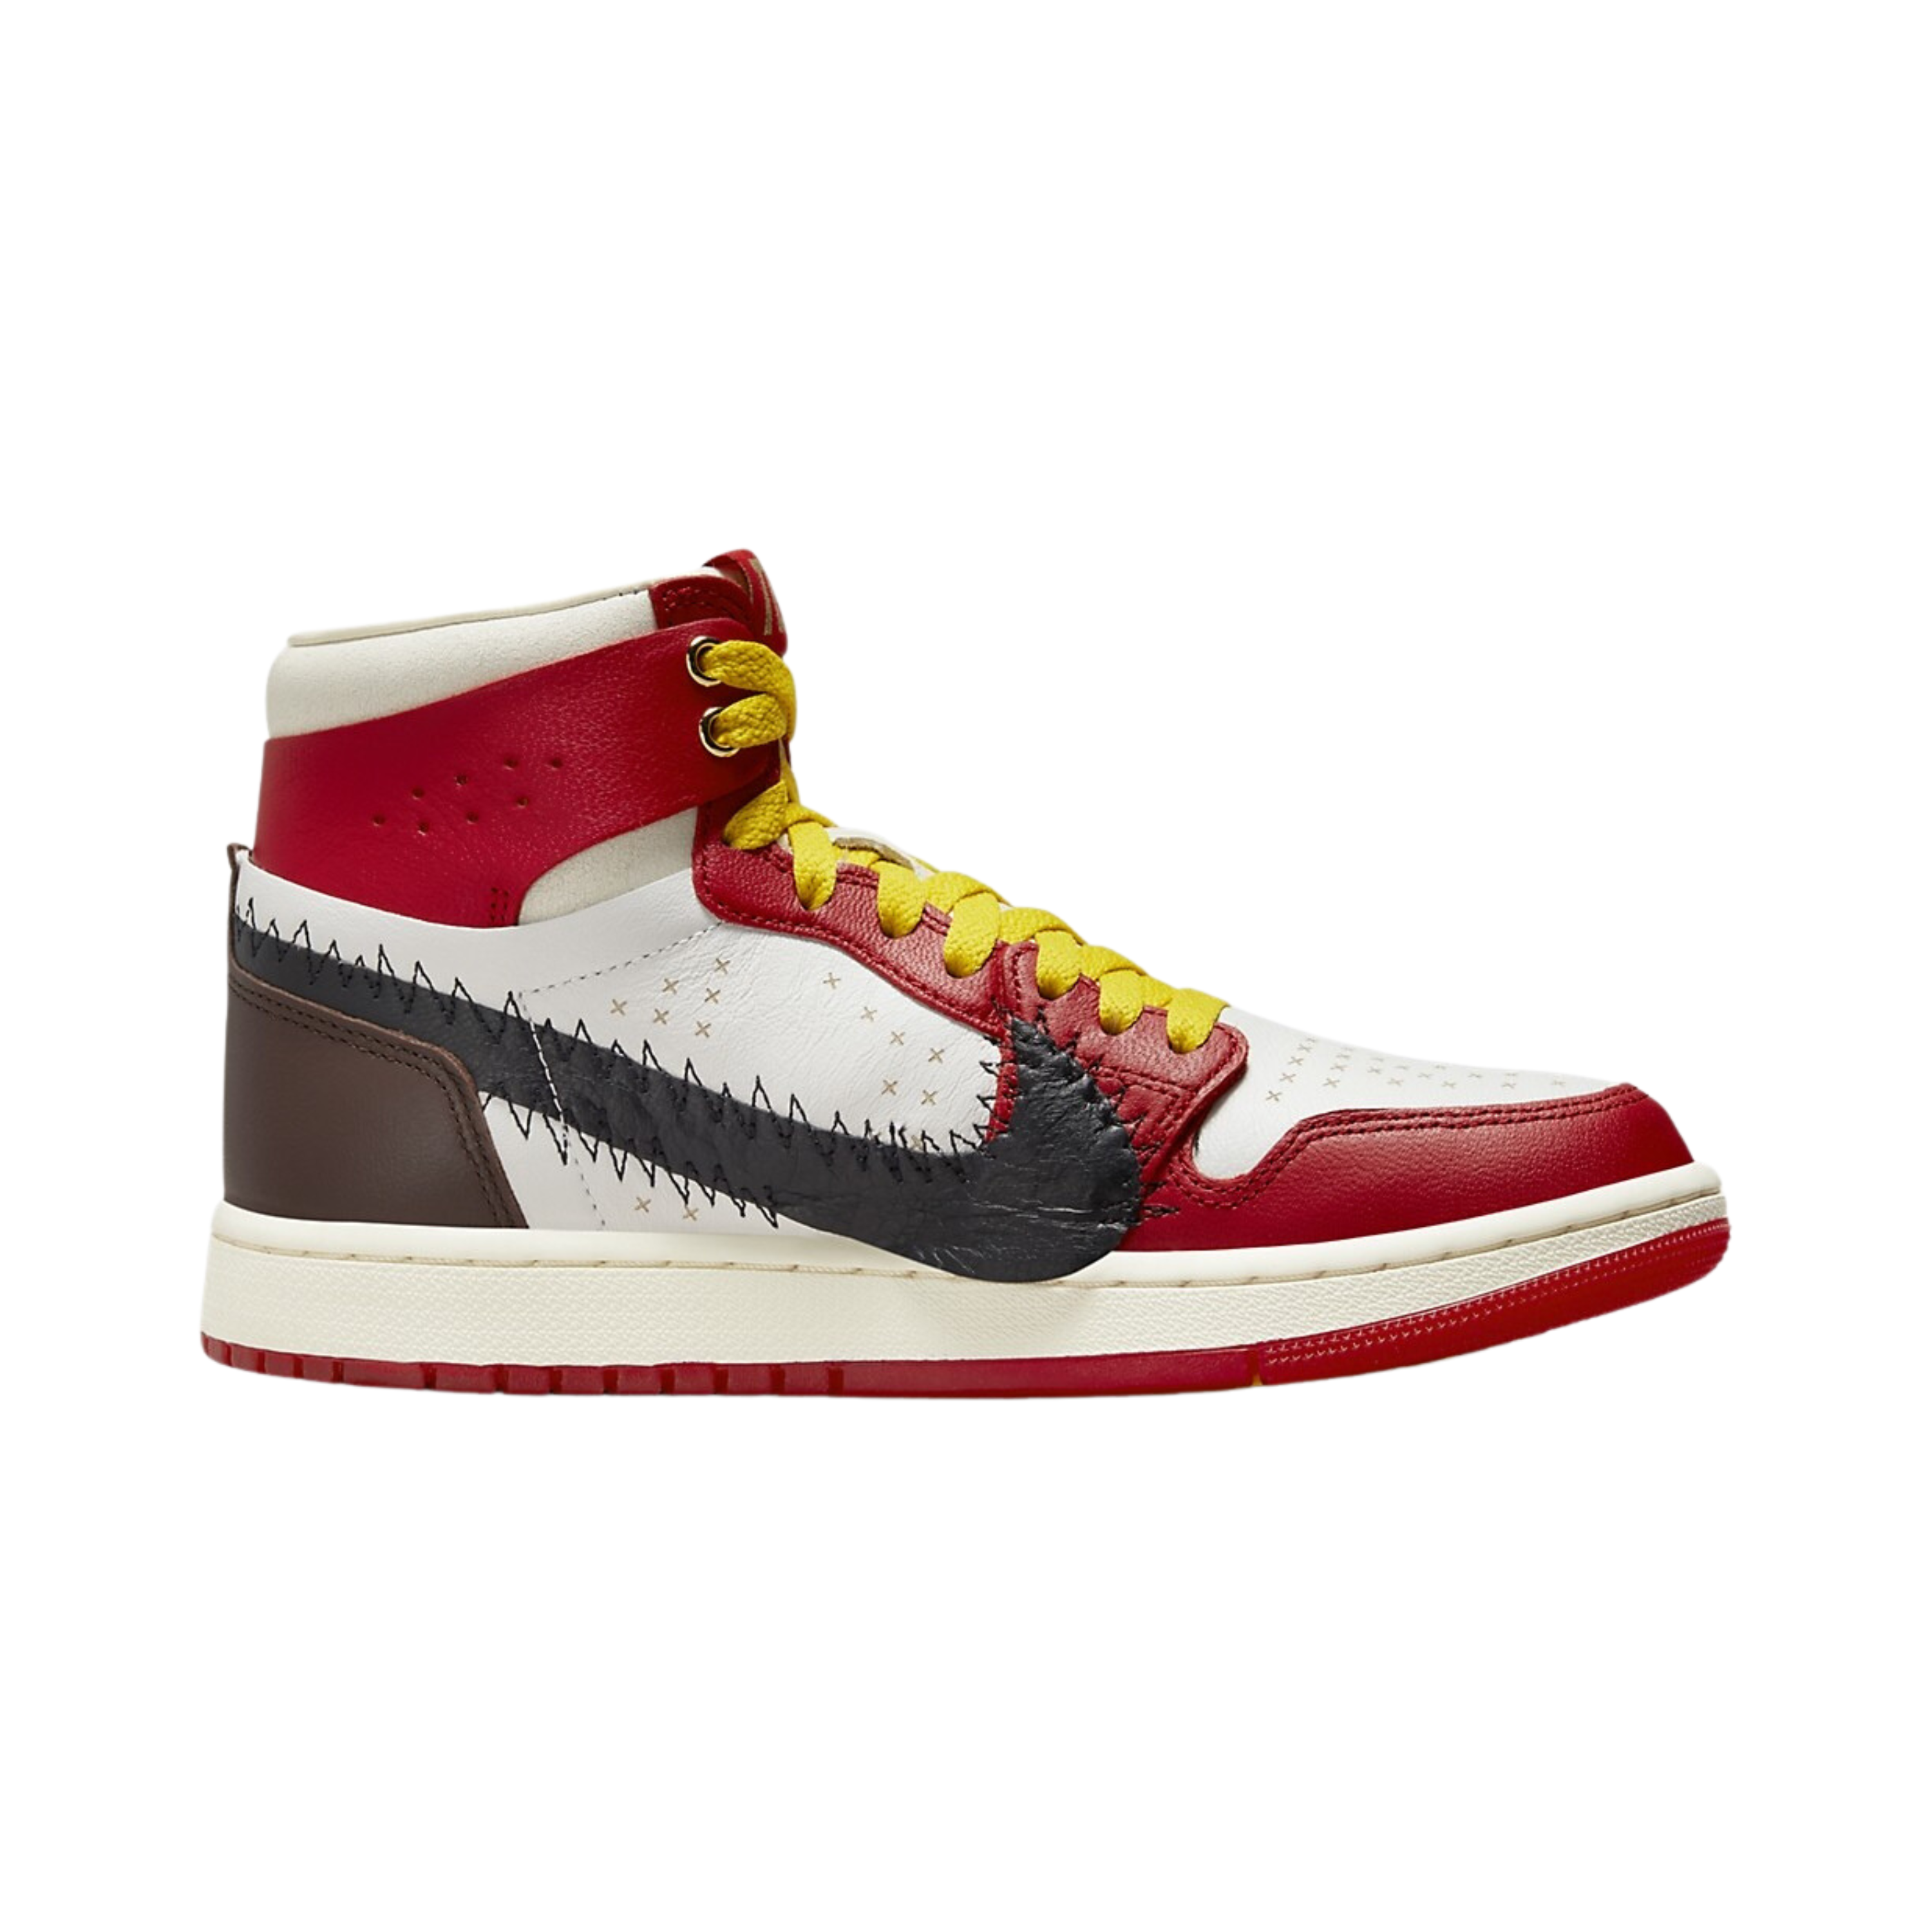 Louis Vuitton LV Pink Nike Air Jordan 1 Shoes Sneakers - Shop trending  fashion in USA and EU